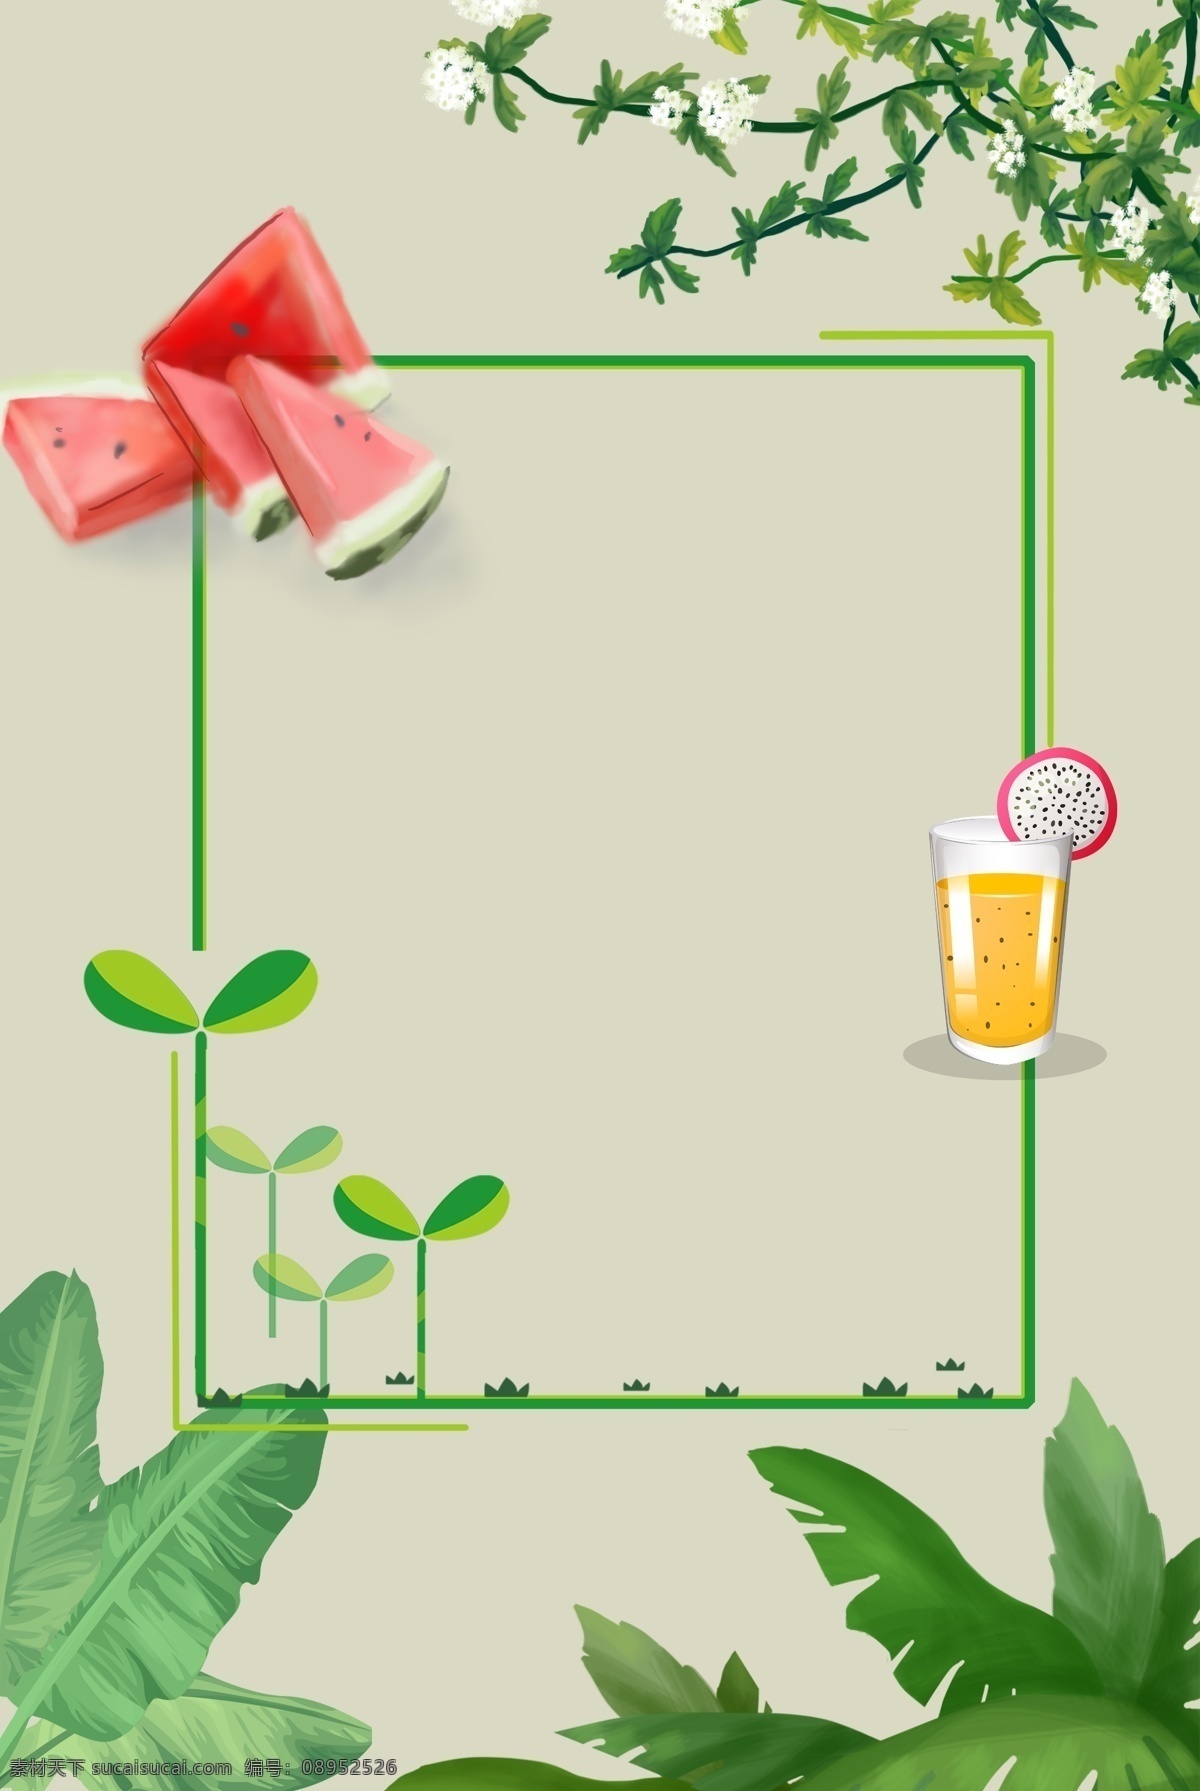 夏季 果蔬 海报 背景 图 背景图 清凉 植物 果汁 清新